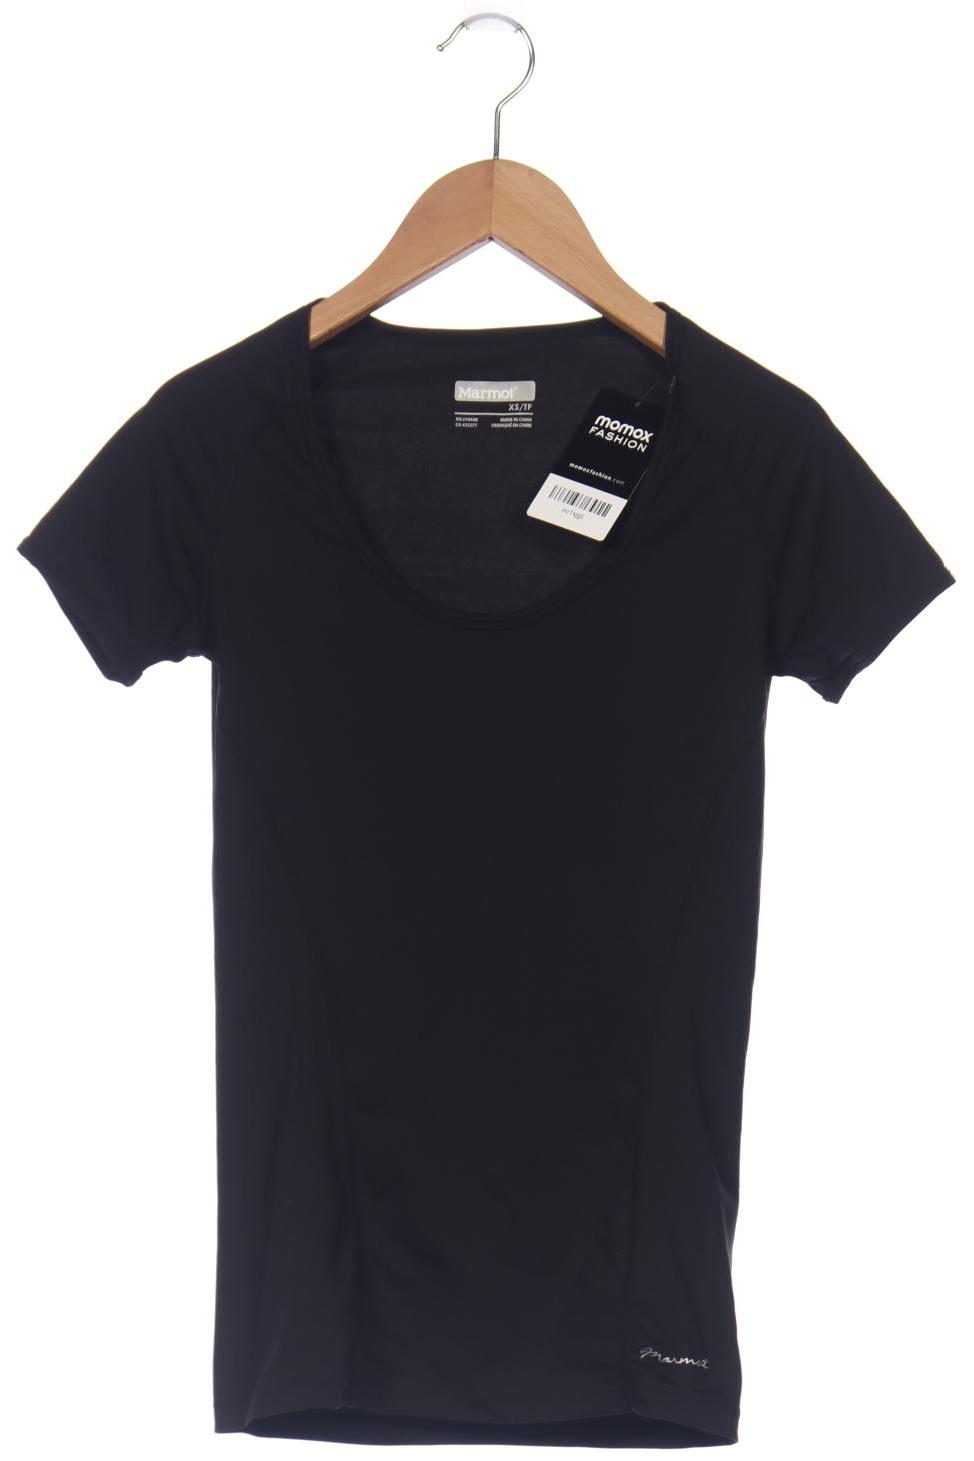 Marmot Damen T-Shirt, schwarz, Gr. 34 von Marmot